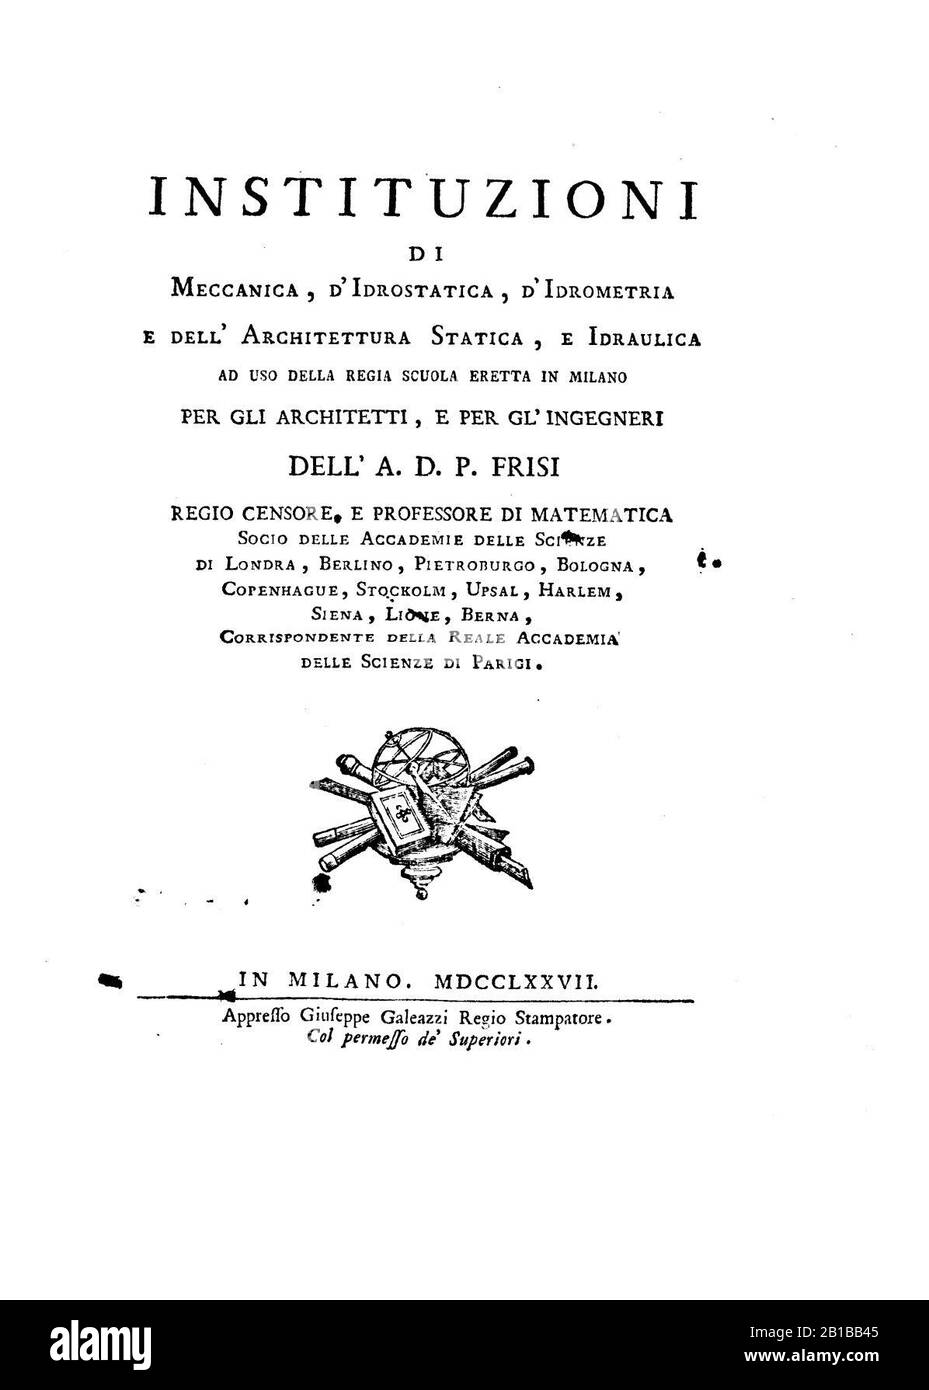 Frisi - Institutions of meccanica, d'idrostatica, d'idrometria e dell'architettura statica e idraulica, 1777 - 1490112 F. Foto Stock